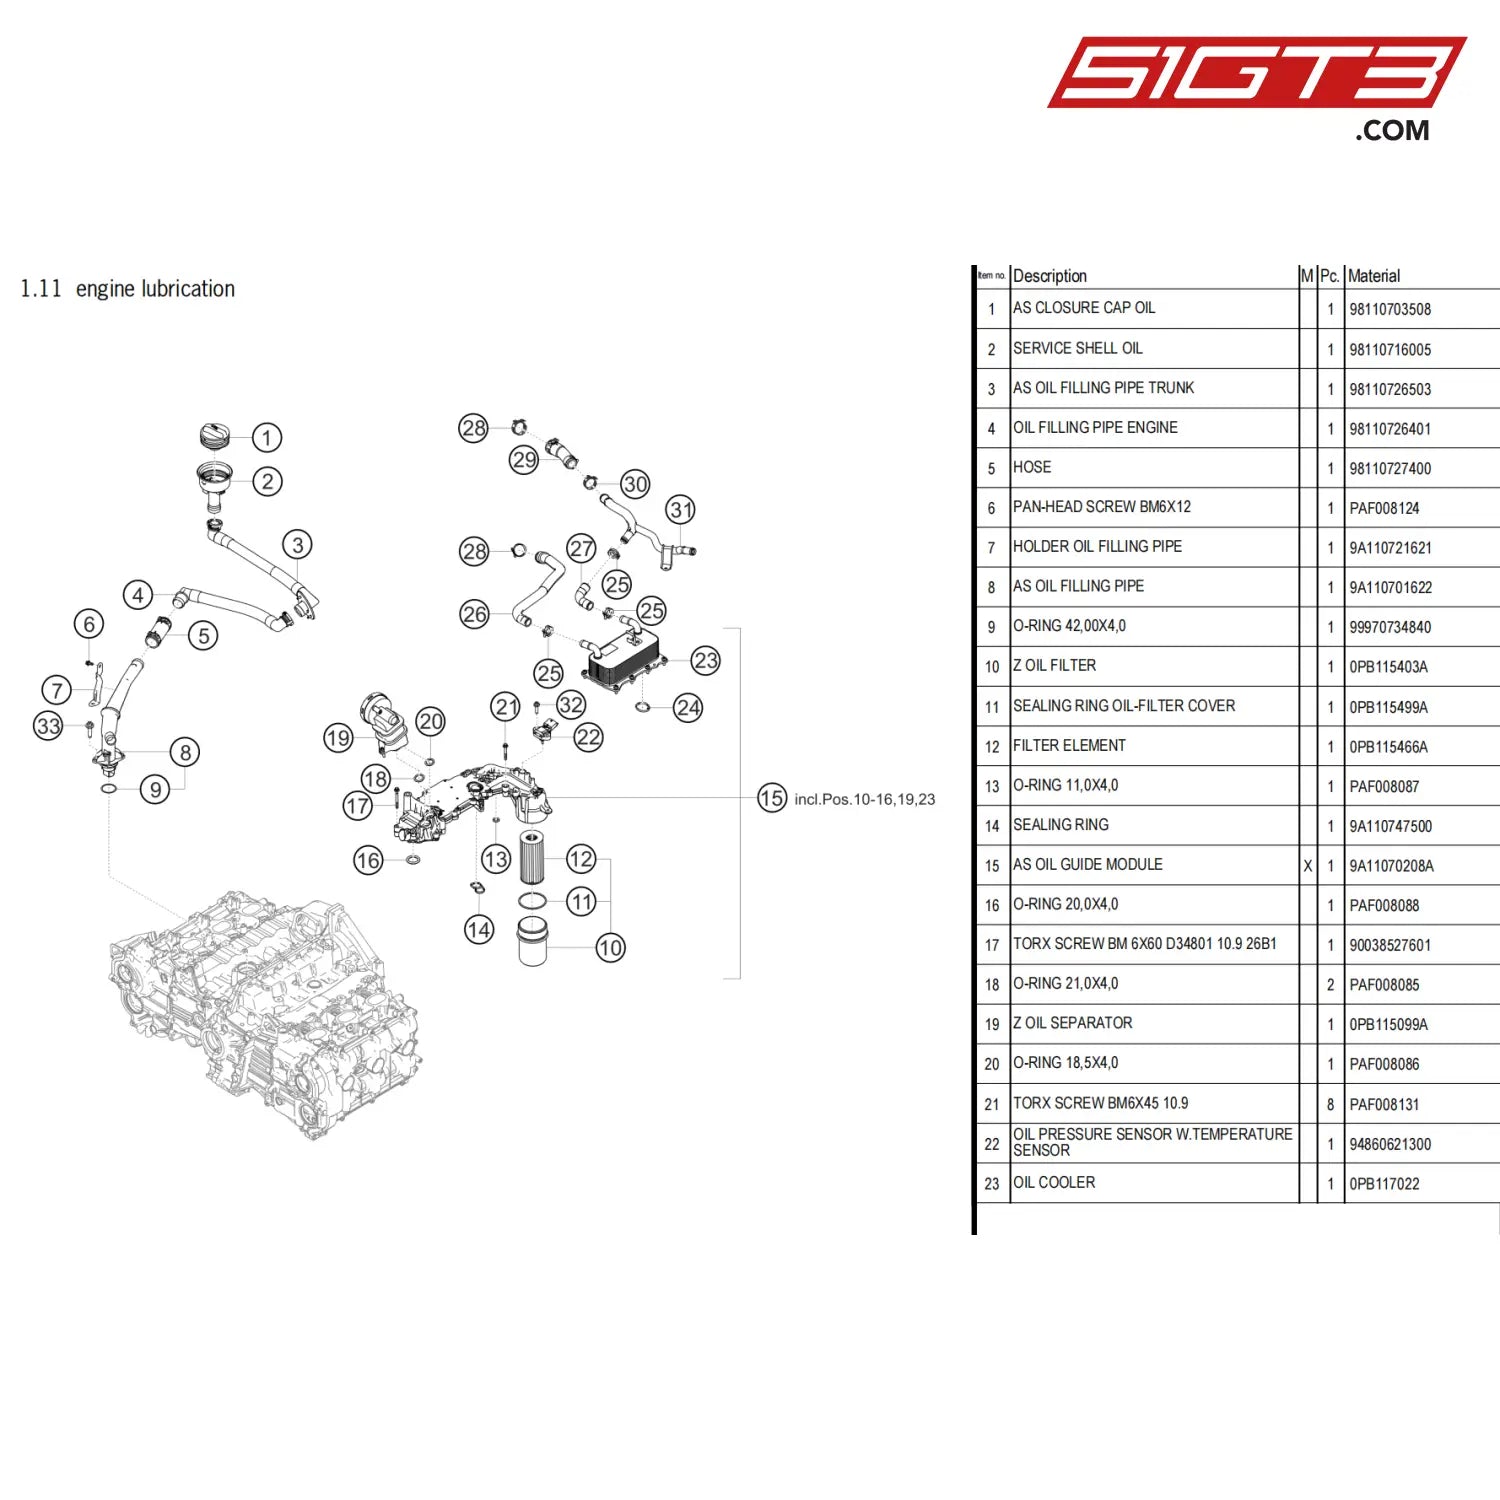 Filter Element - 0Pb115466A [Porsche 718 Cayman Gt4 Clubsport] Engine Lubrication